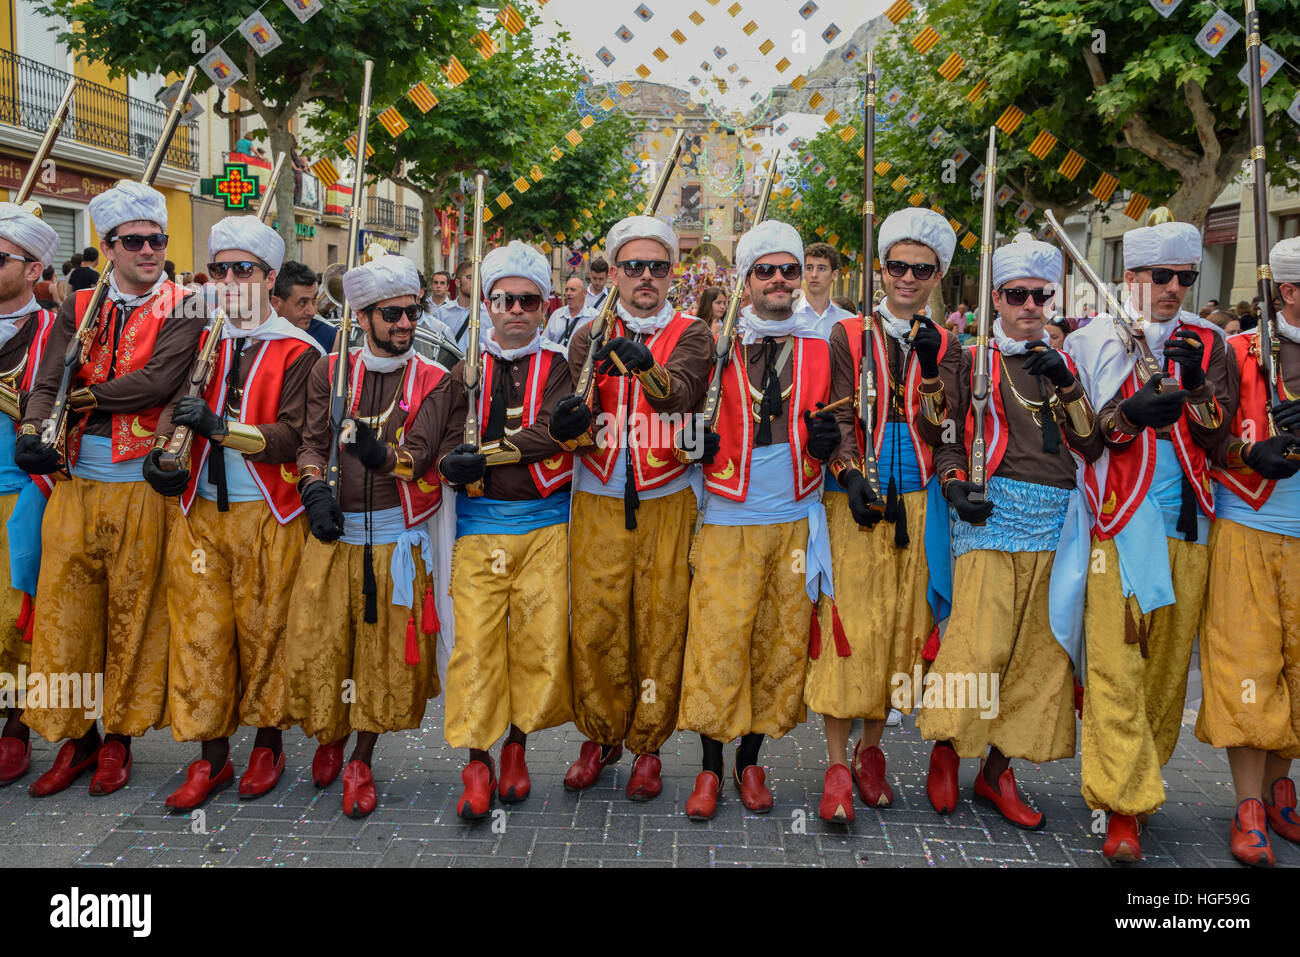 Gruppo in abiti tradizionali, Mori e Cristiani Parade, moros y cristianos, Jijona o Xixona, Provincia di Alicante Foto Stock